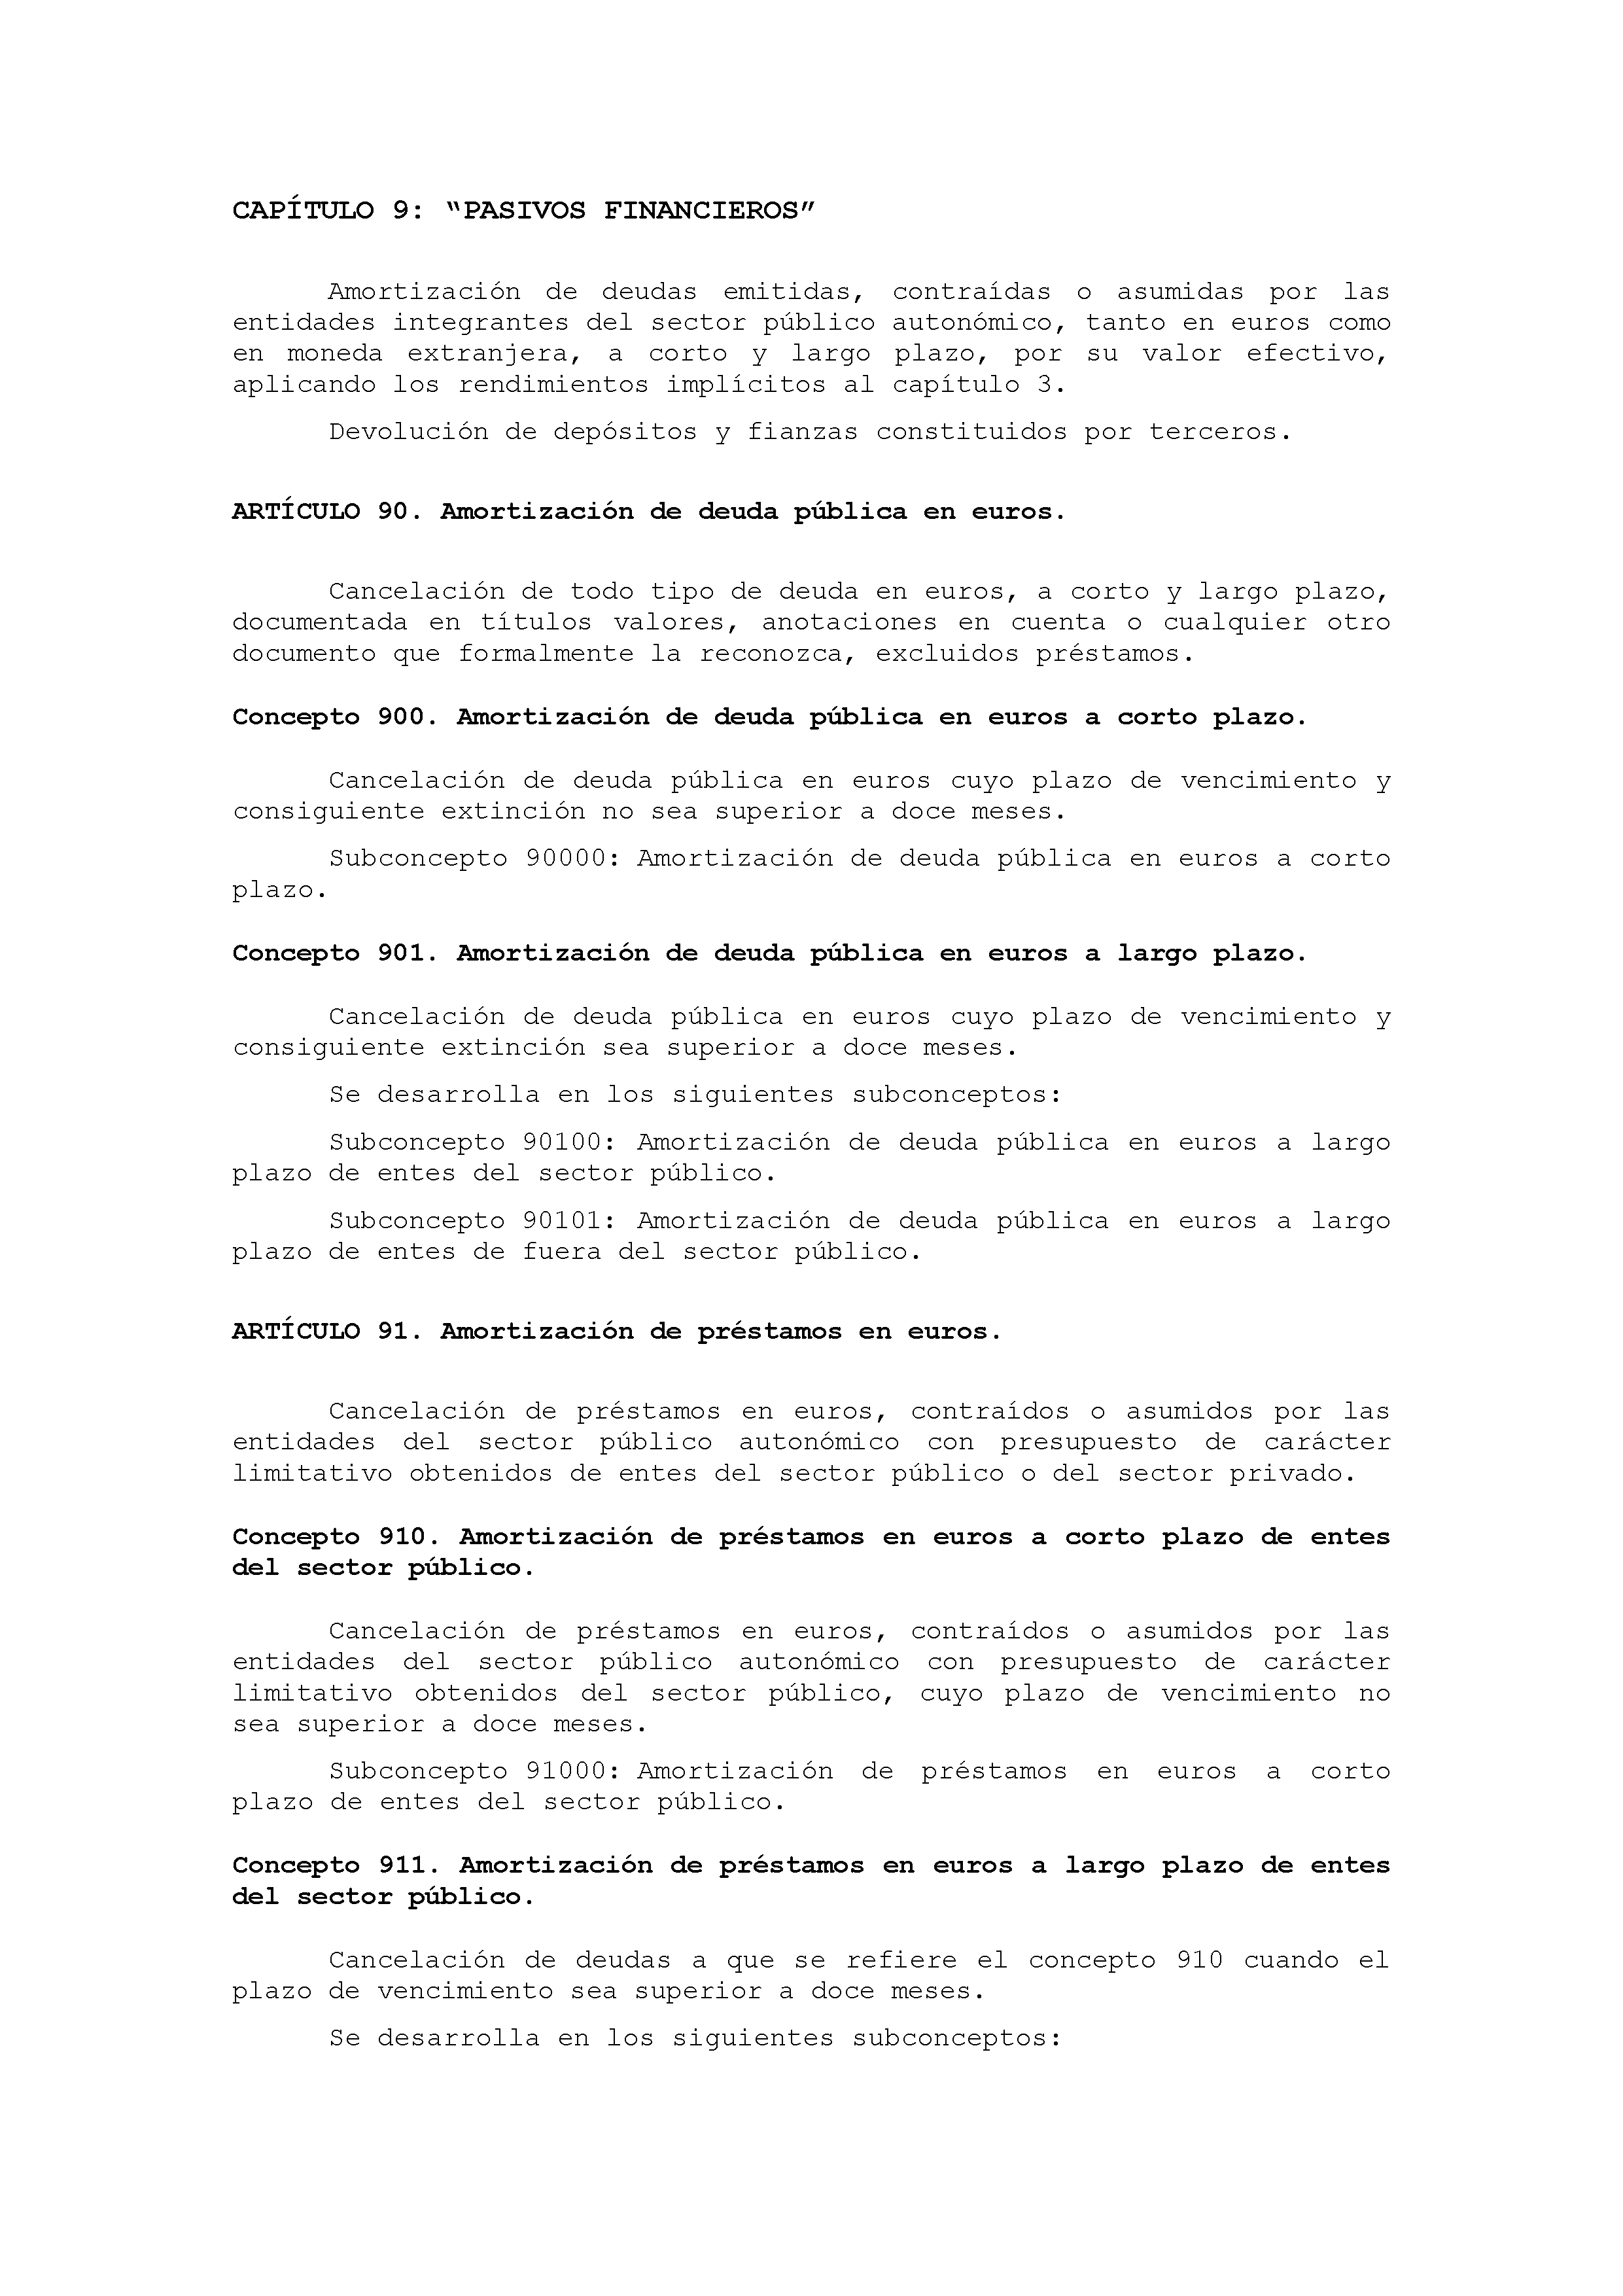 ANEXO IX CÓDIGO DE LA CLASIFICACIÓN ECONÓMICA DE LOS GASTOS PÚBLICOS Pag 46